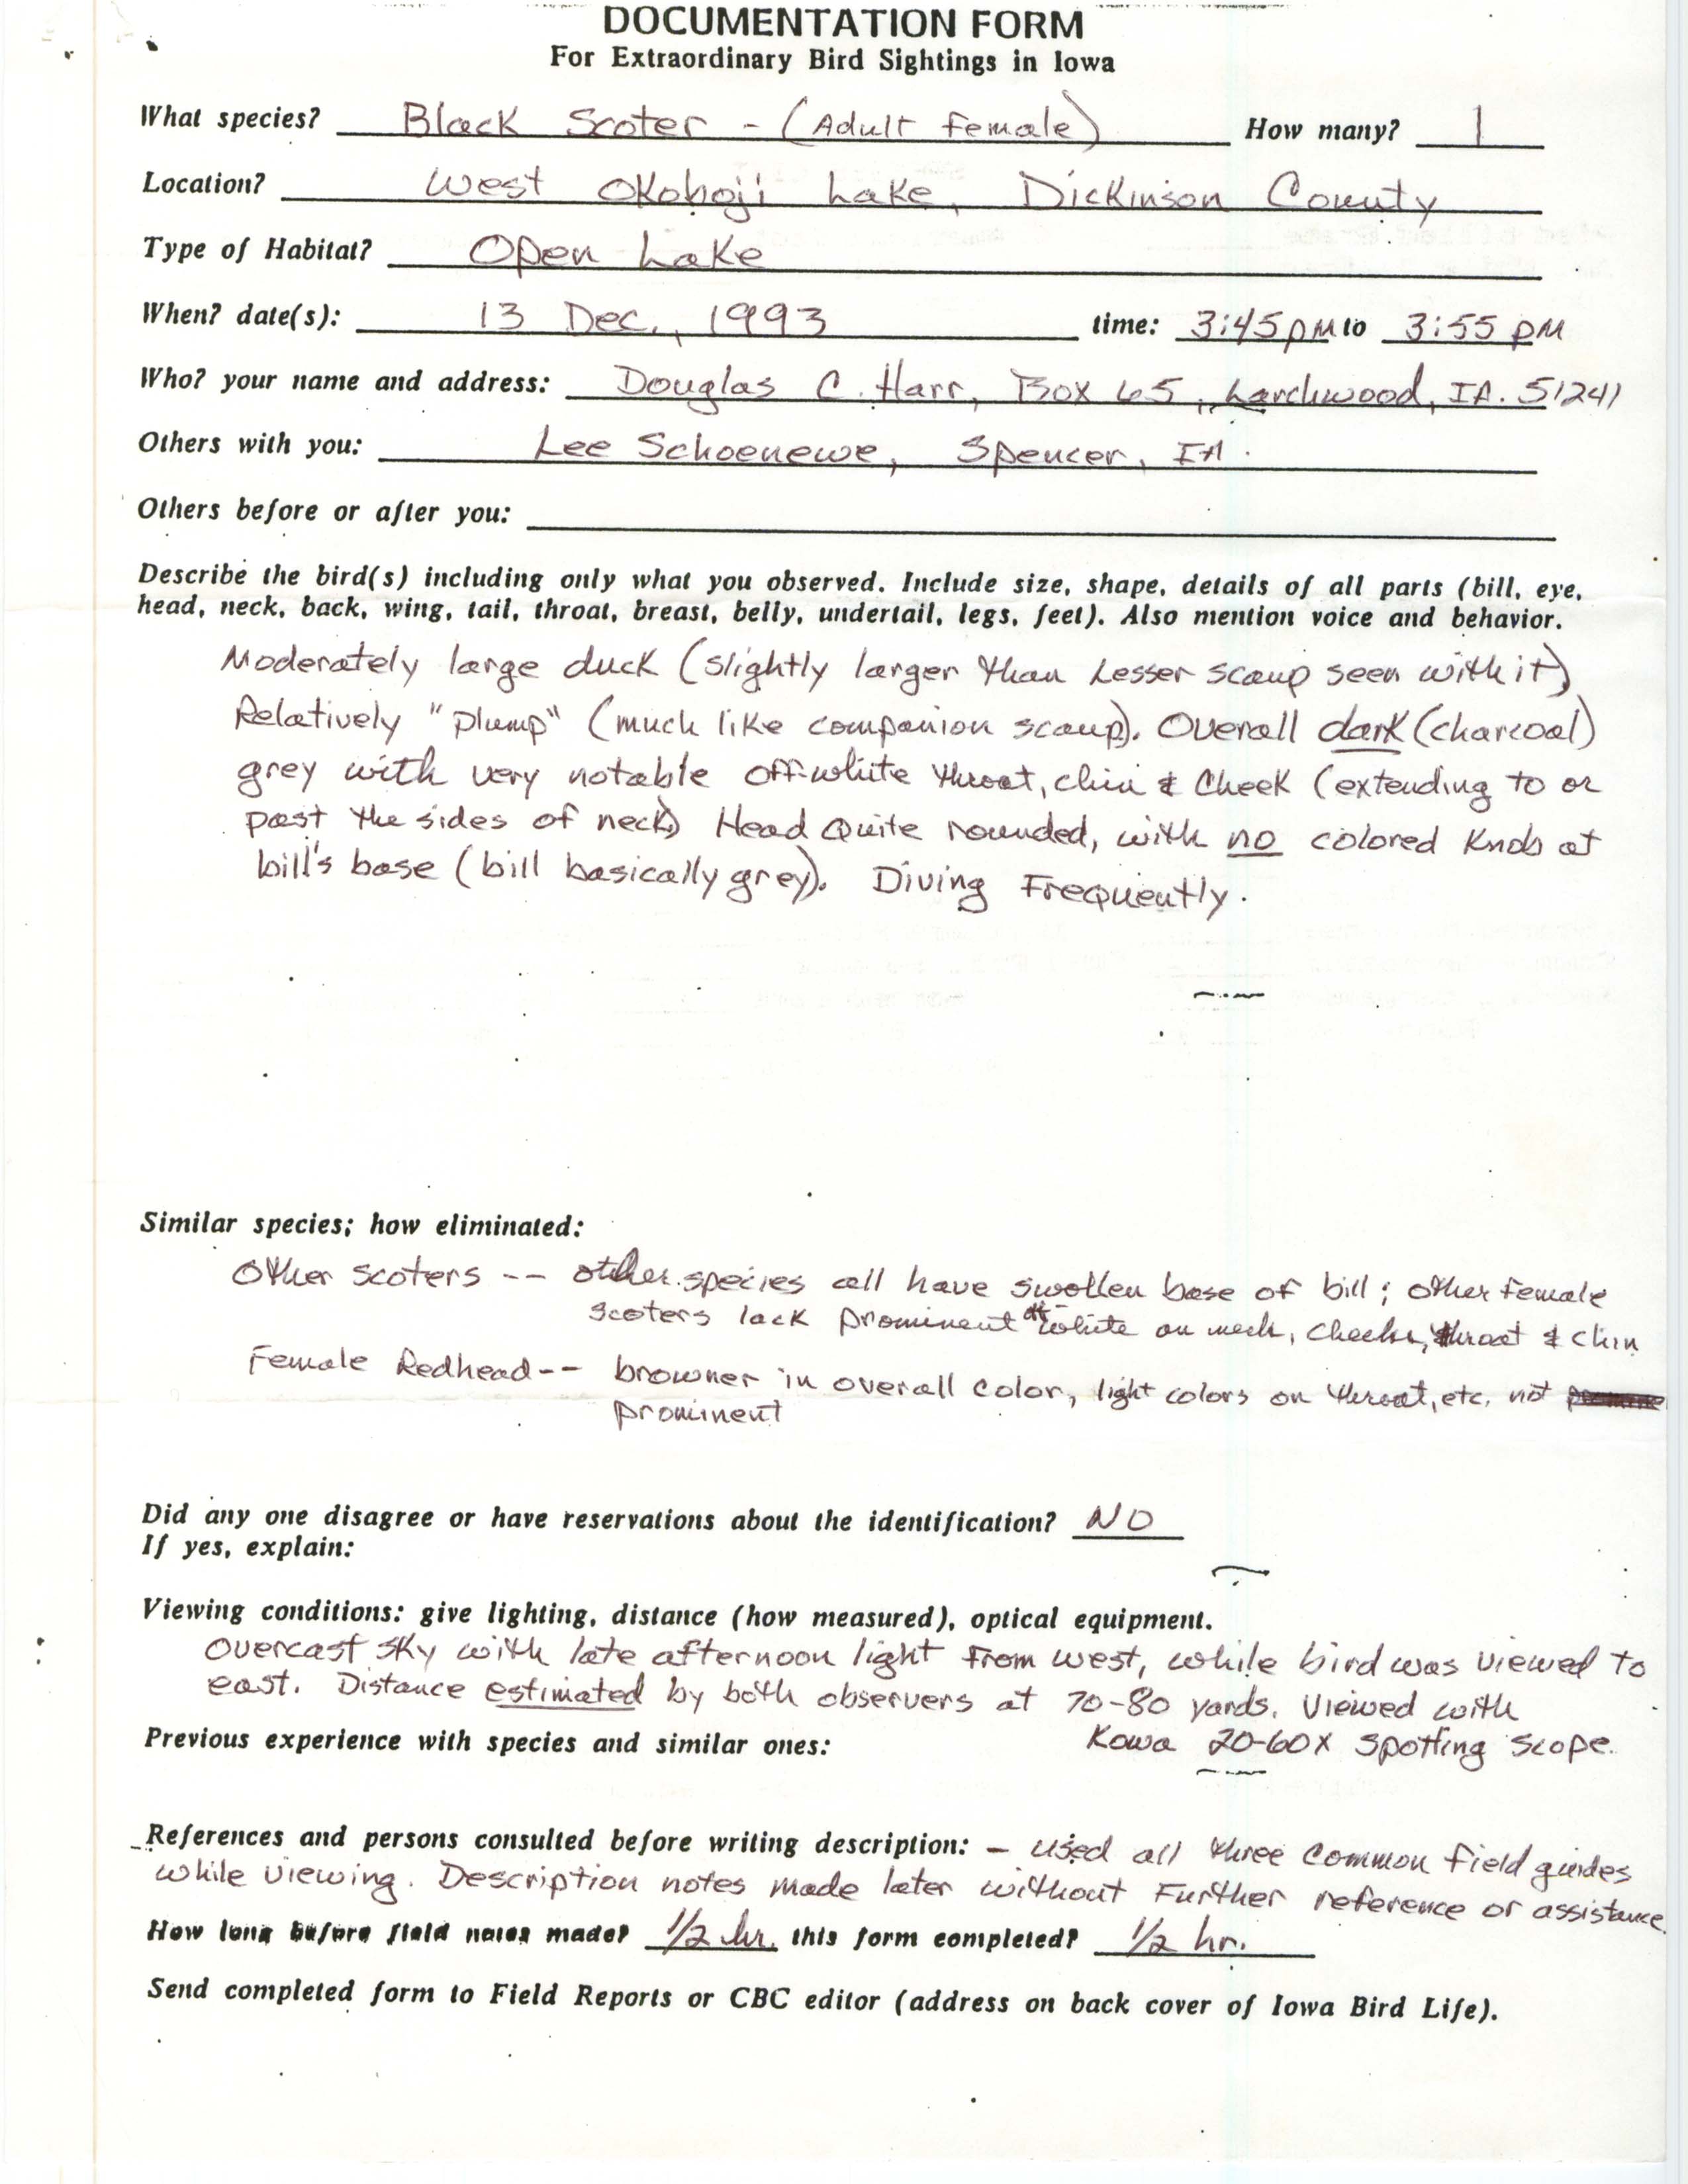 Rare bird documentation form for Black Scoter at West Okoboji, 1993